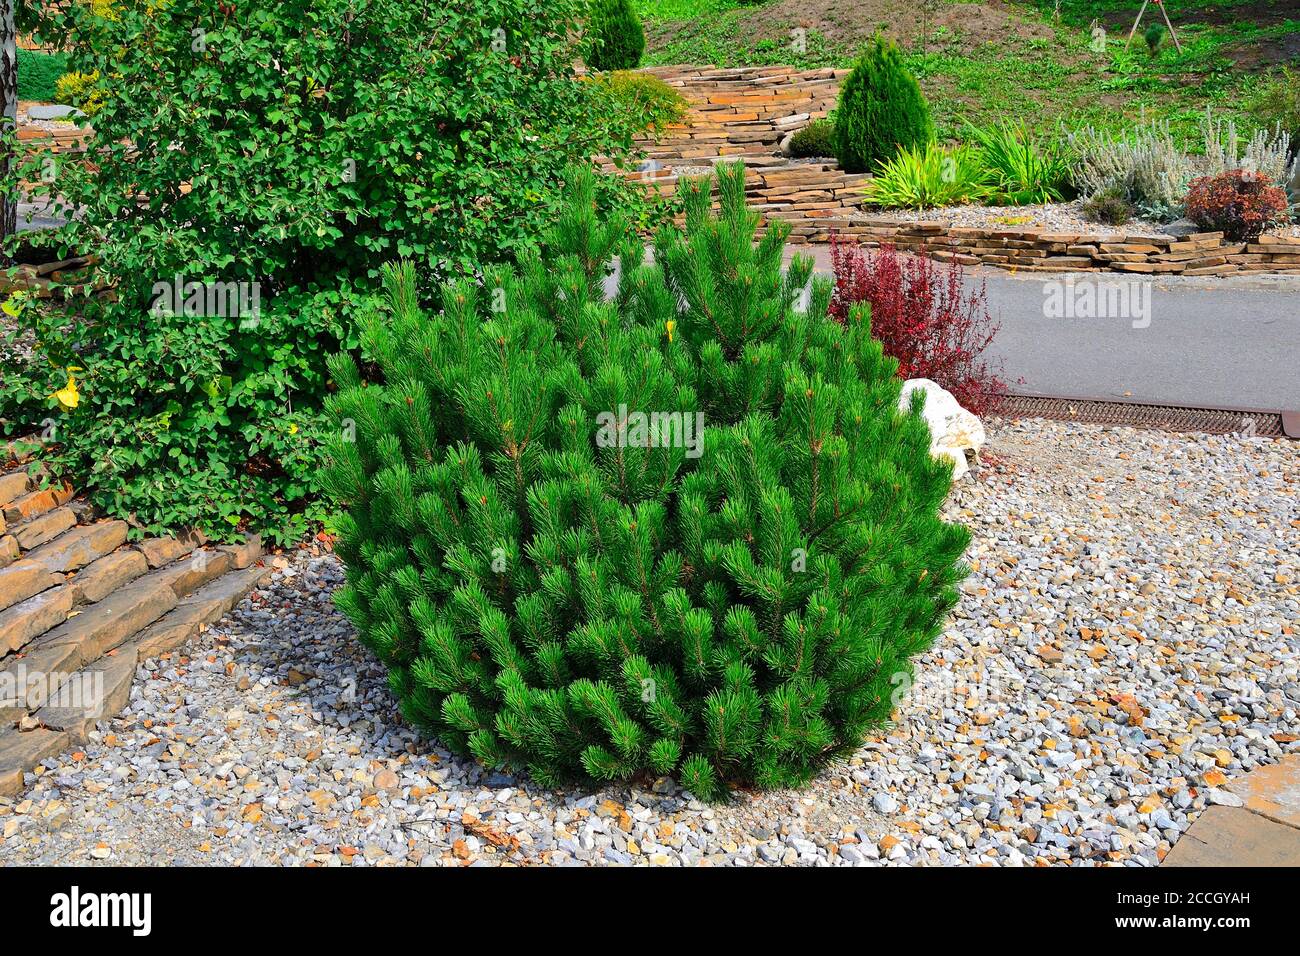 Pins de montagne nains - plante conifères sous-dimensionnée décorative dans un jardin rocheux. Arbustes d'ornement pour le jardinage ou la conception de paysage d'alpi Banque D'Images